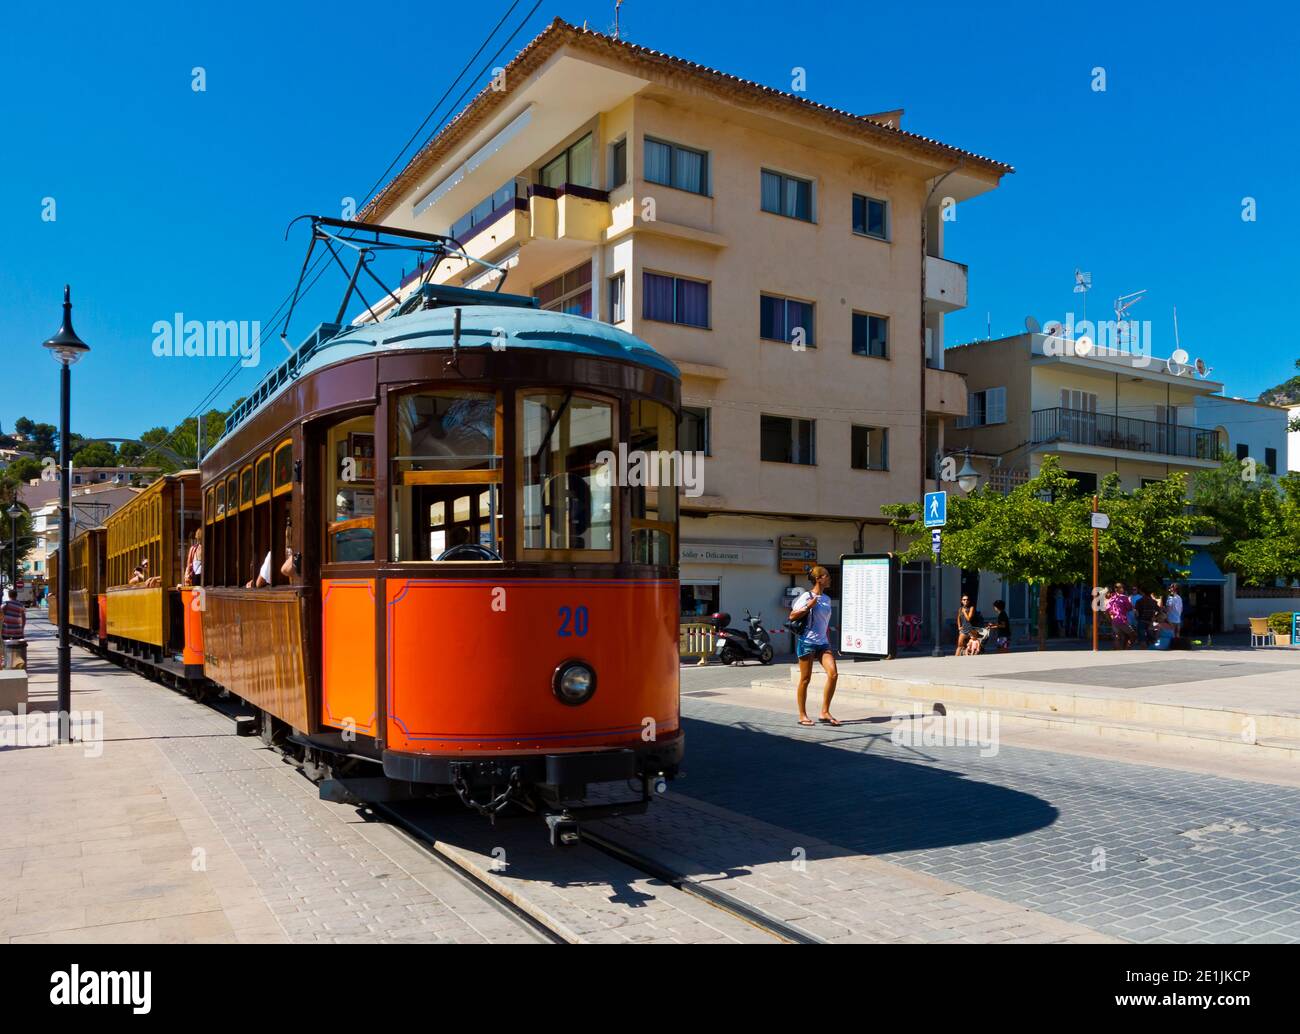 Straßenbahn 20 auf der Trambahn Tranvia de Soller, die zwischen Port de Soller und Soller im Nordwesten Mallorcas in Spanien verkehrt, wurde die Strecke 1913 eröffnet. Stockfoto